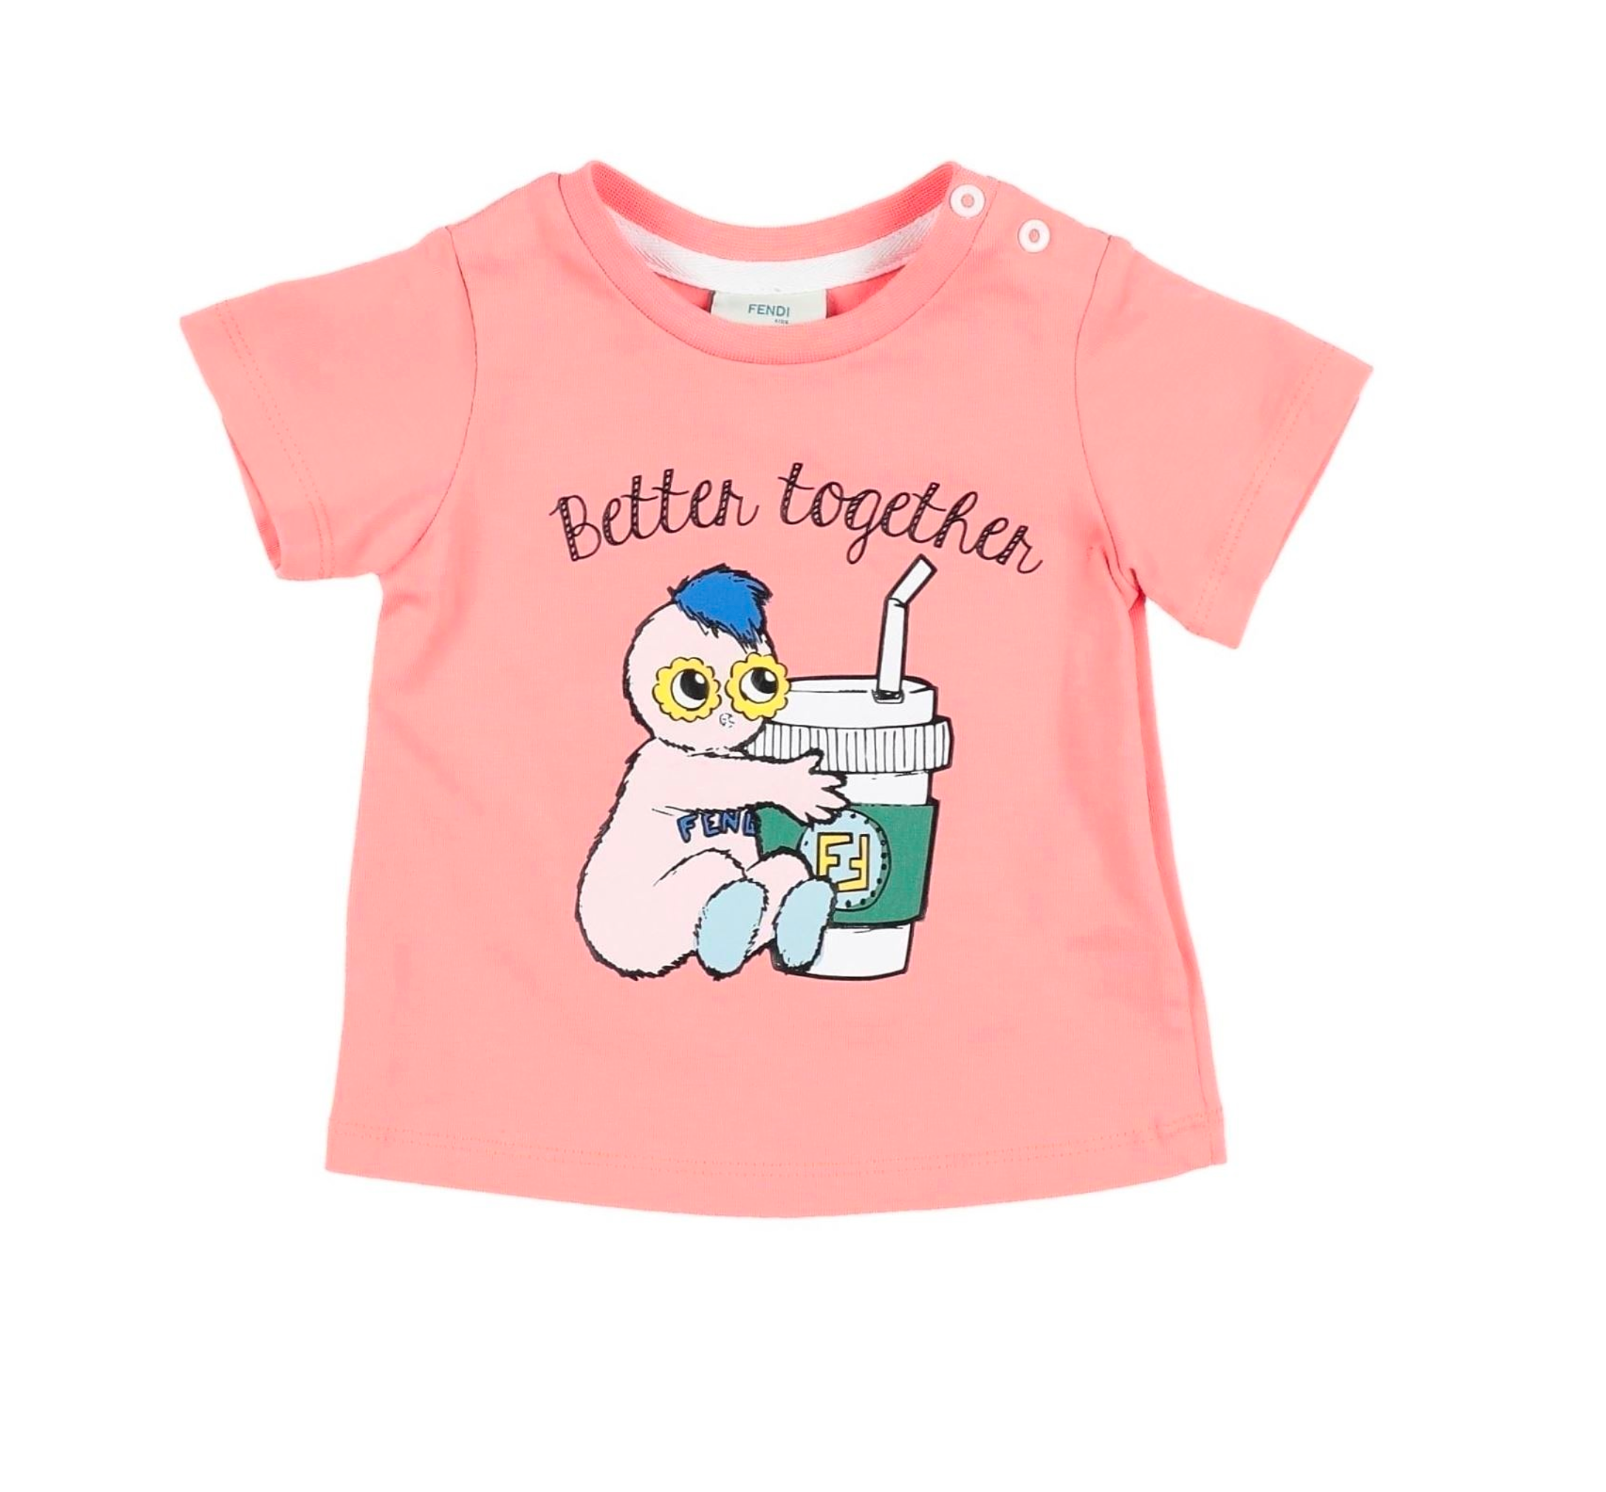 FENDI - T-shirt "better together" - 3 mois